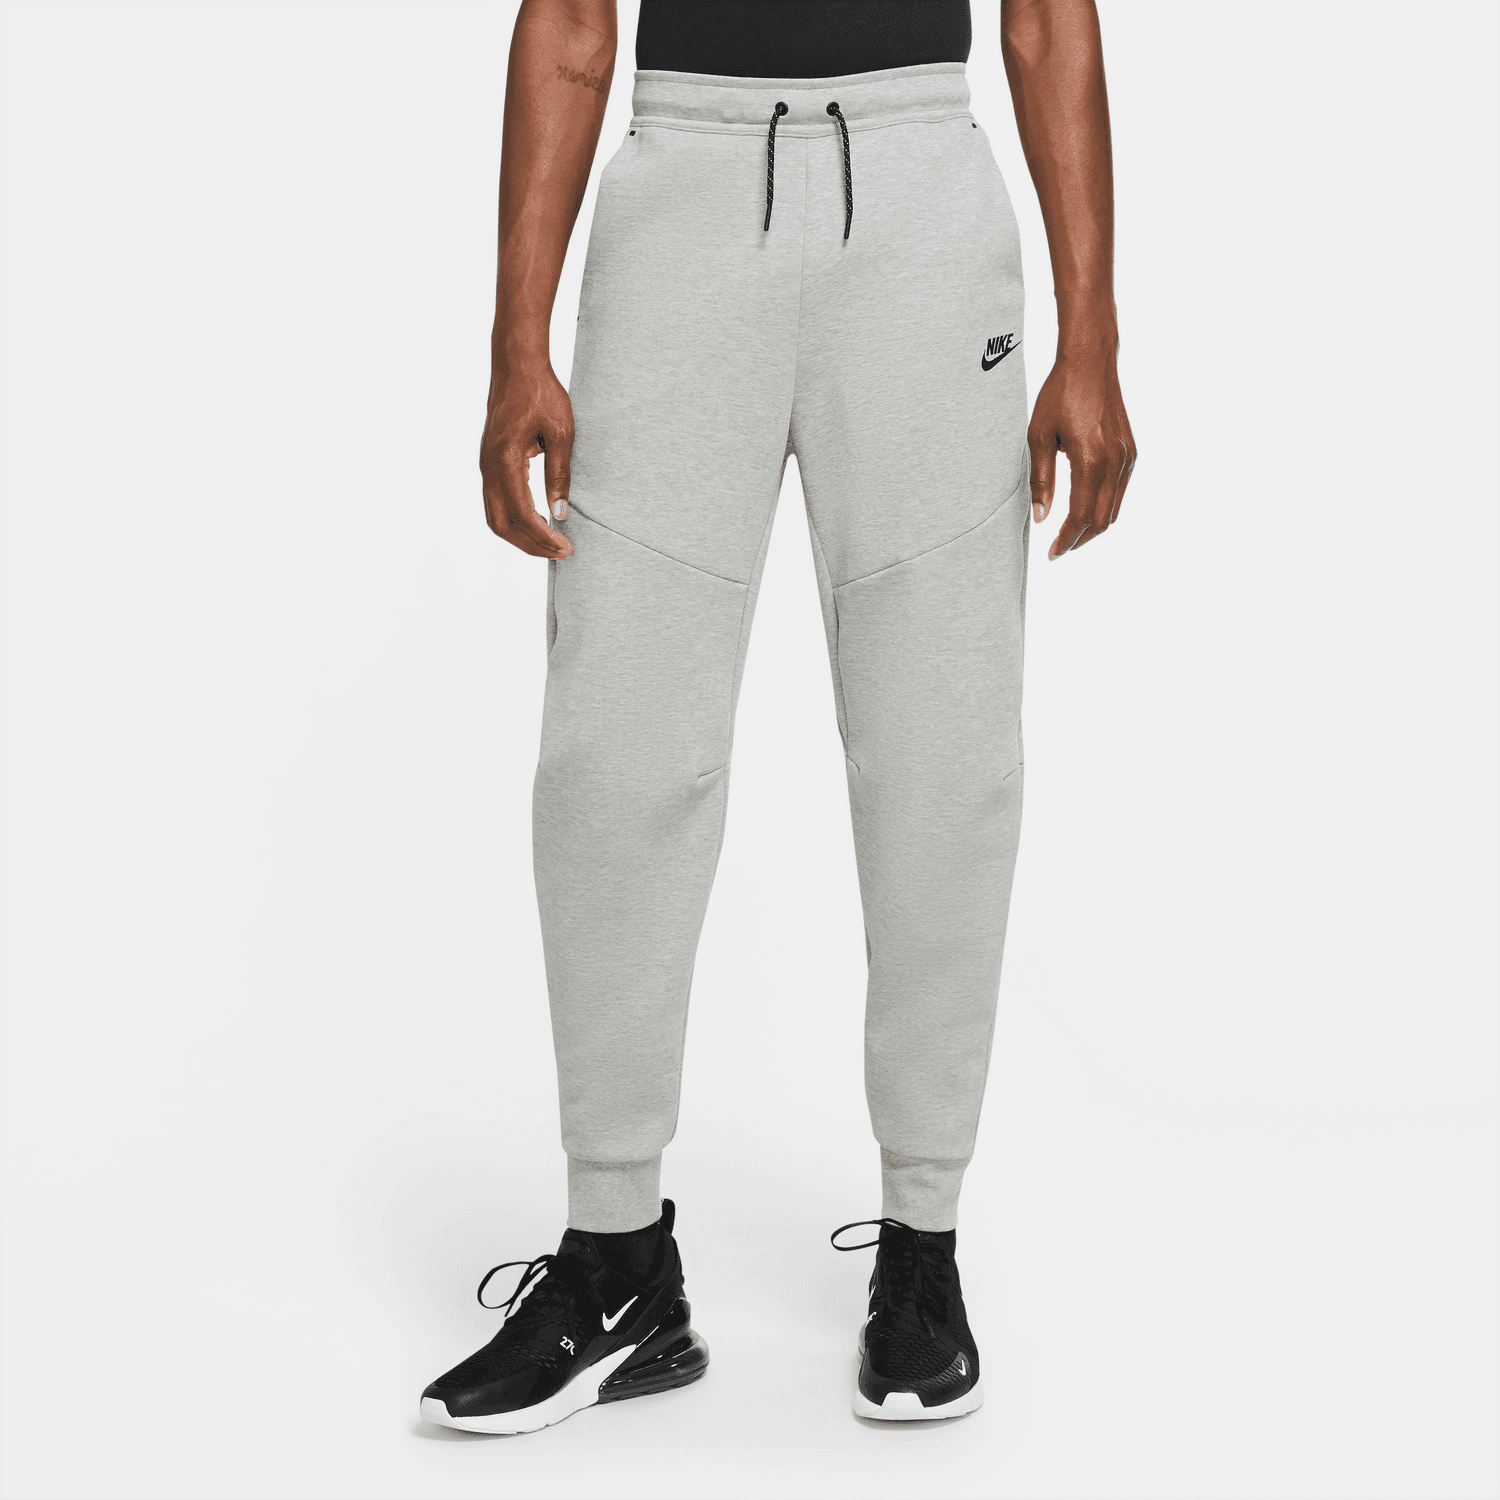 Sweatpants Nike Sportswear Tech Fleece Sweatpanst cu4495-330